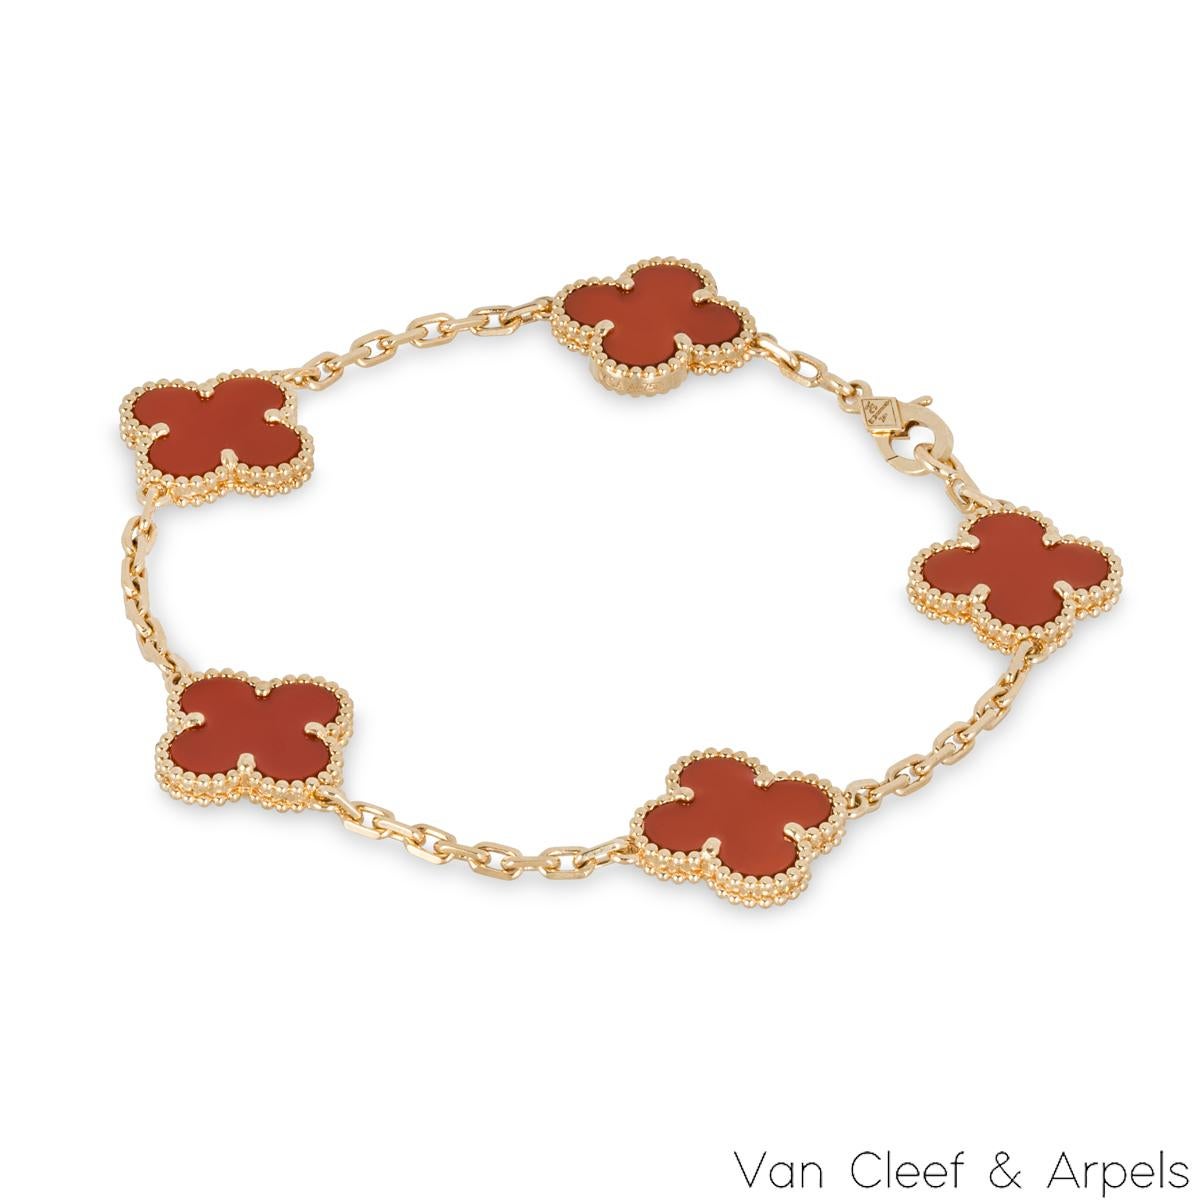 Ravissant bracelet en cornaline en or jaune 18 carats de la collection Vintage Alhambra de Van Cleef & Arpels. Le bracelet présente 5 motifs de trèfle emblématiques, chacun serti d'un bord perlé et d'une incrustation de cornaline, disposés sur toute